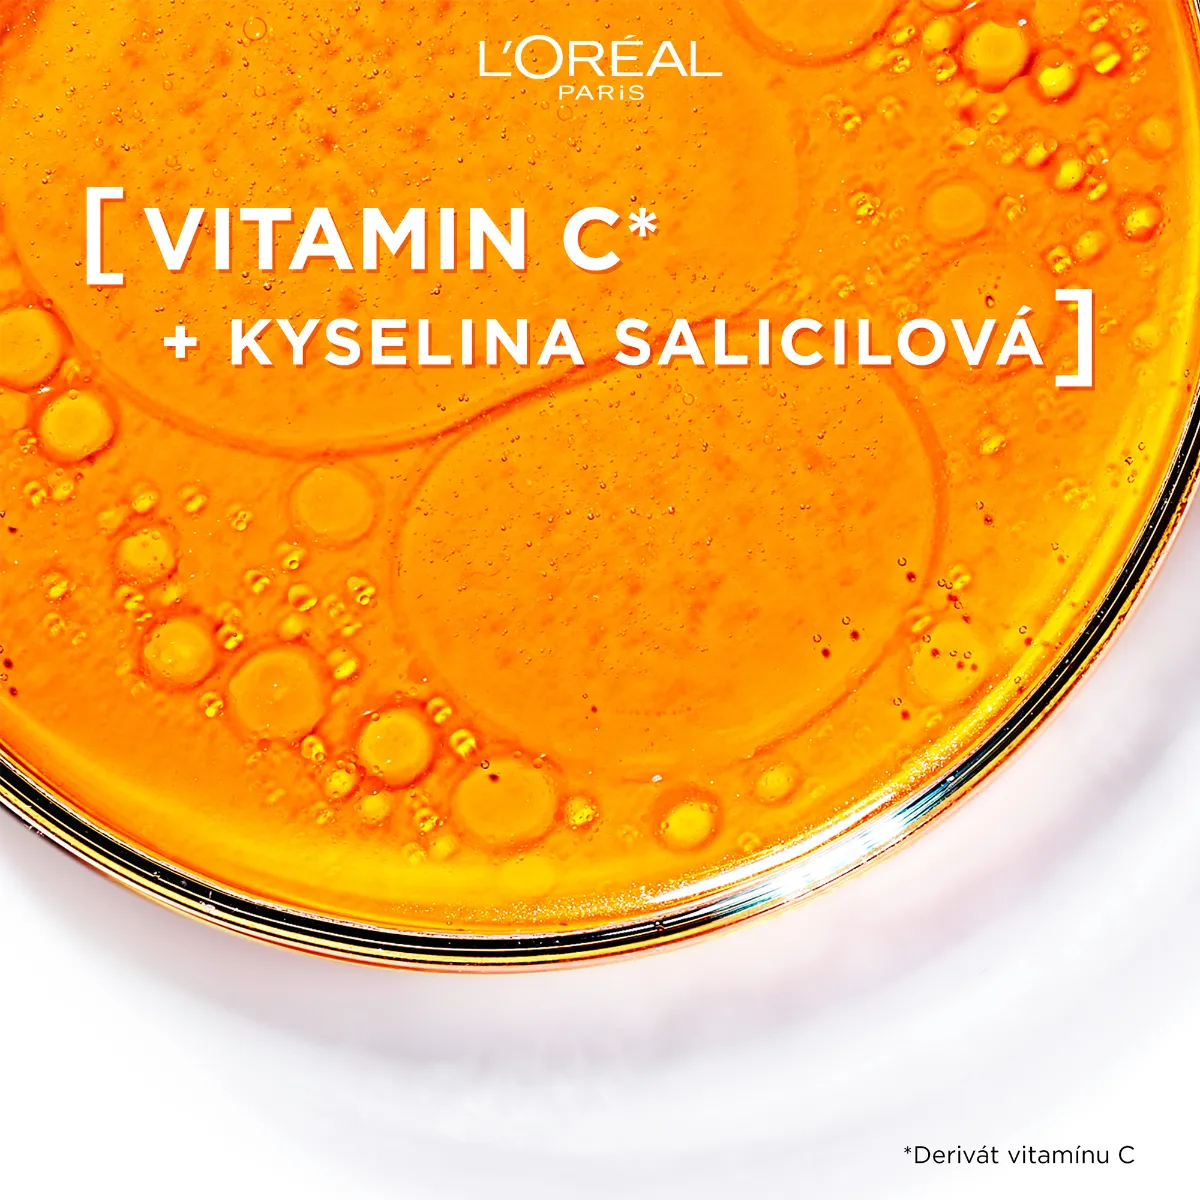 Loréal Paris Revitalift Clinical čisticí pleťová pěna s vitaminem C 150 ml